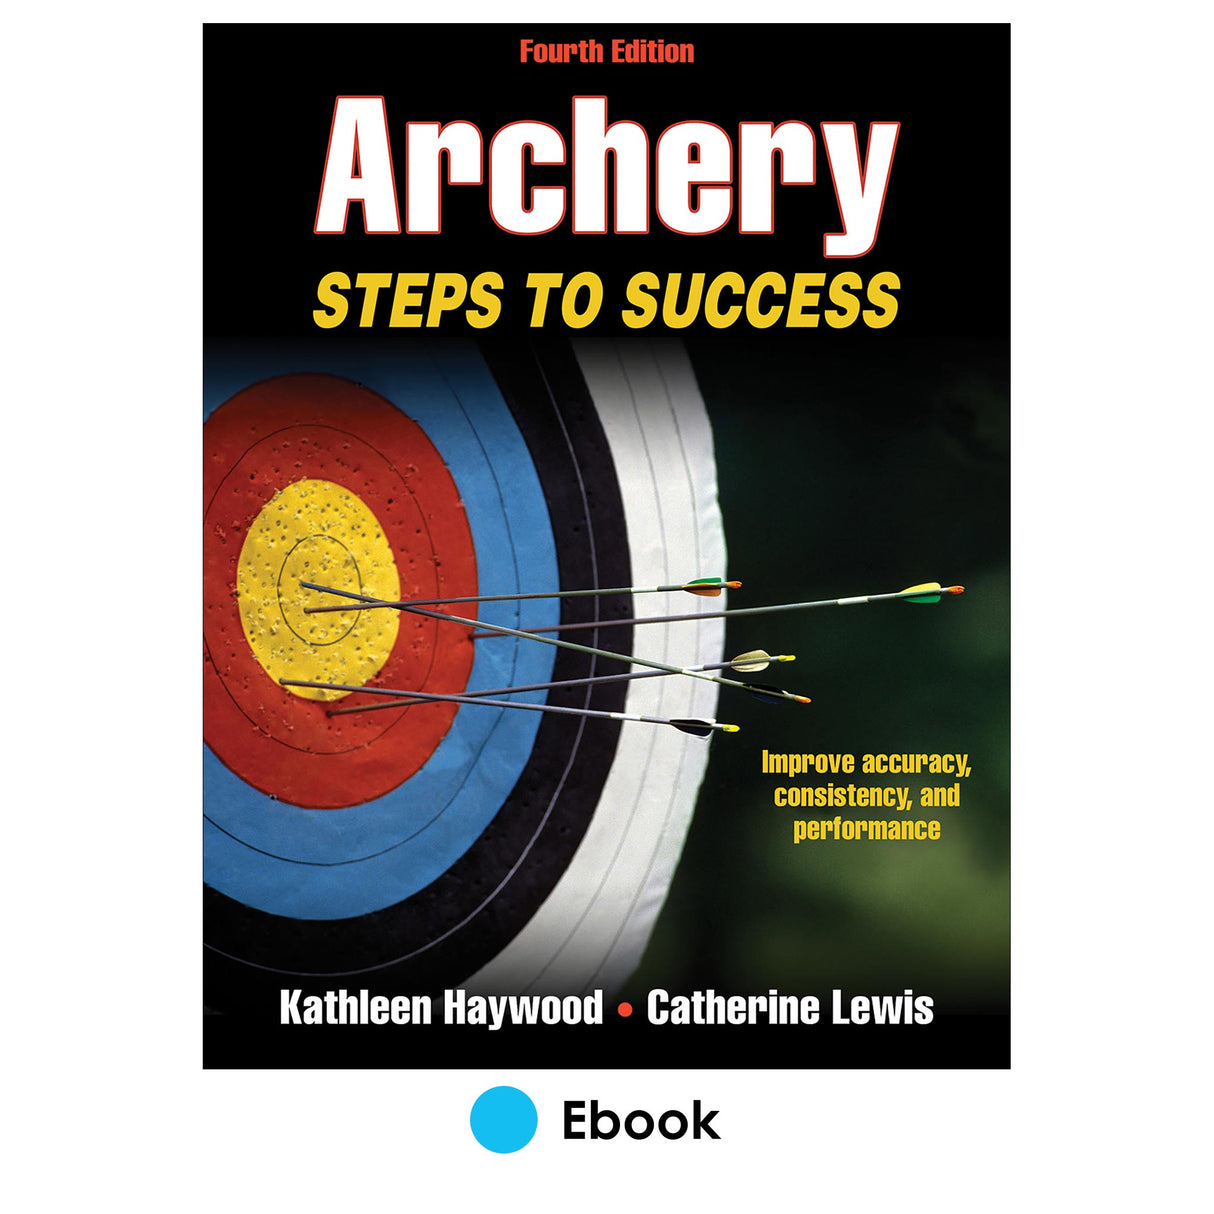 Archery 4th Edition PDF